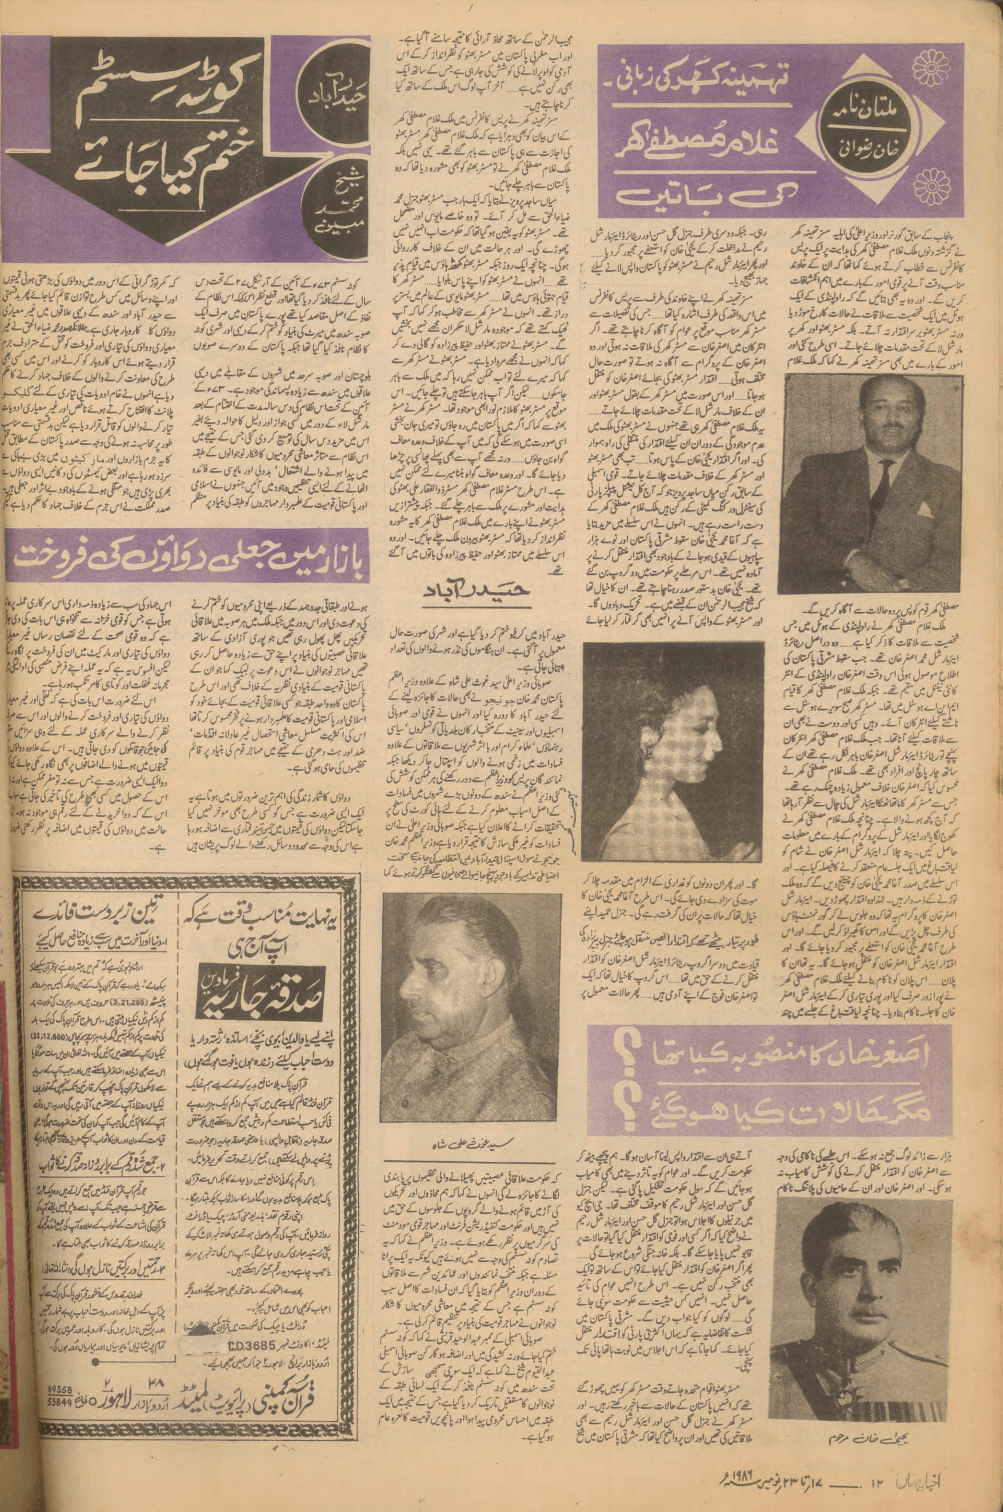 Akhbar-e-Jahan (Nov 23, 1986) - KHAJISTAN™